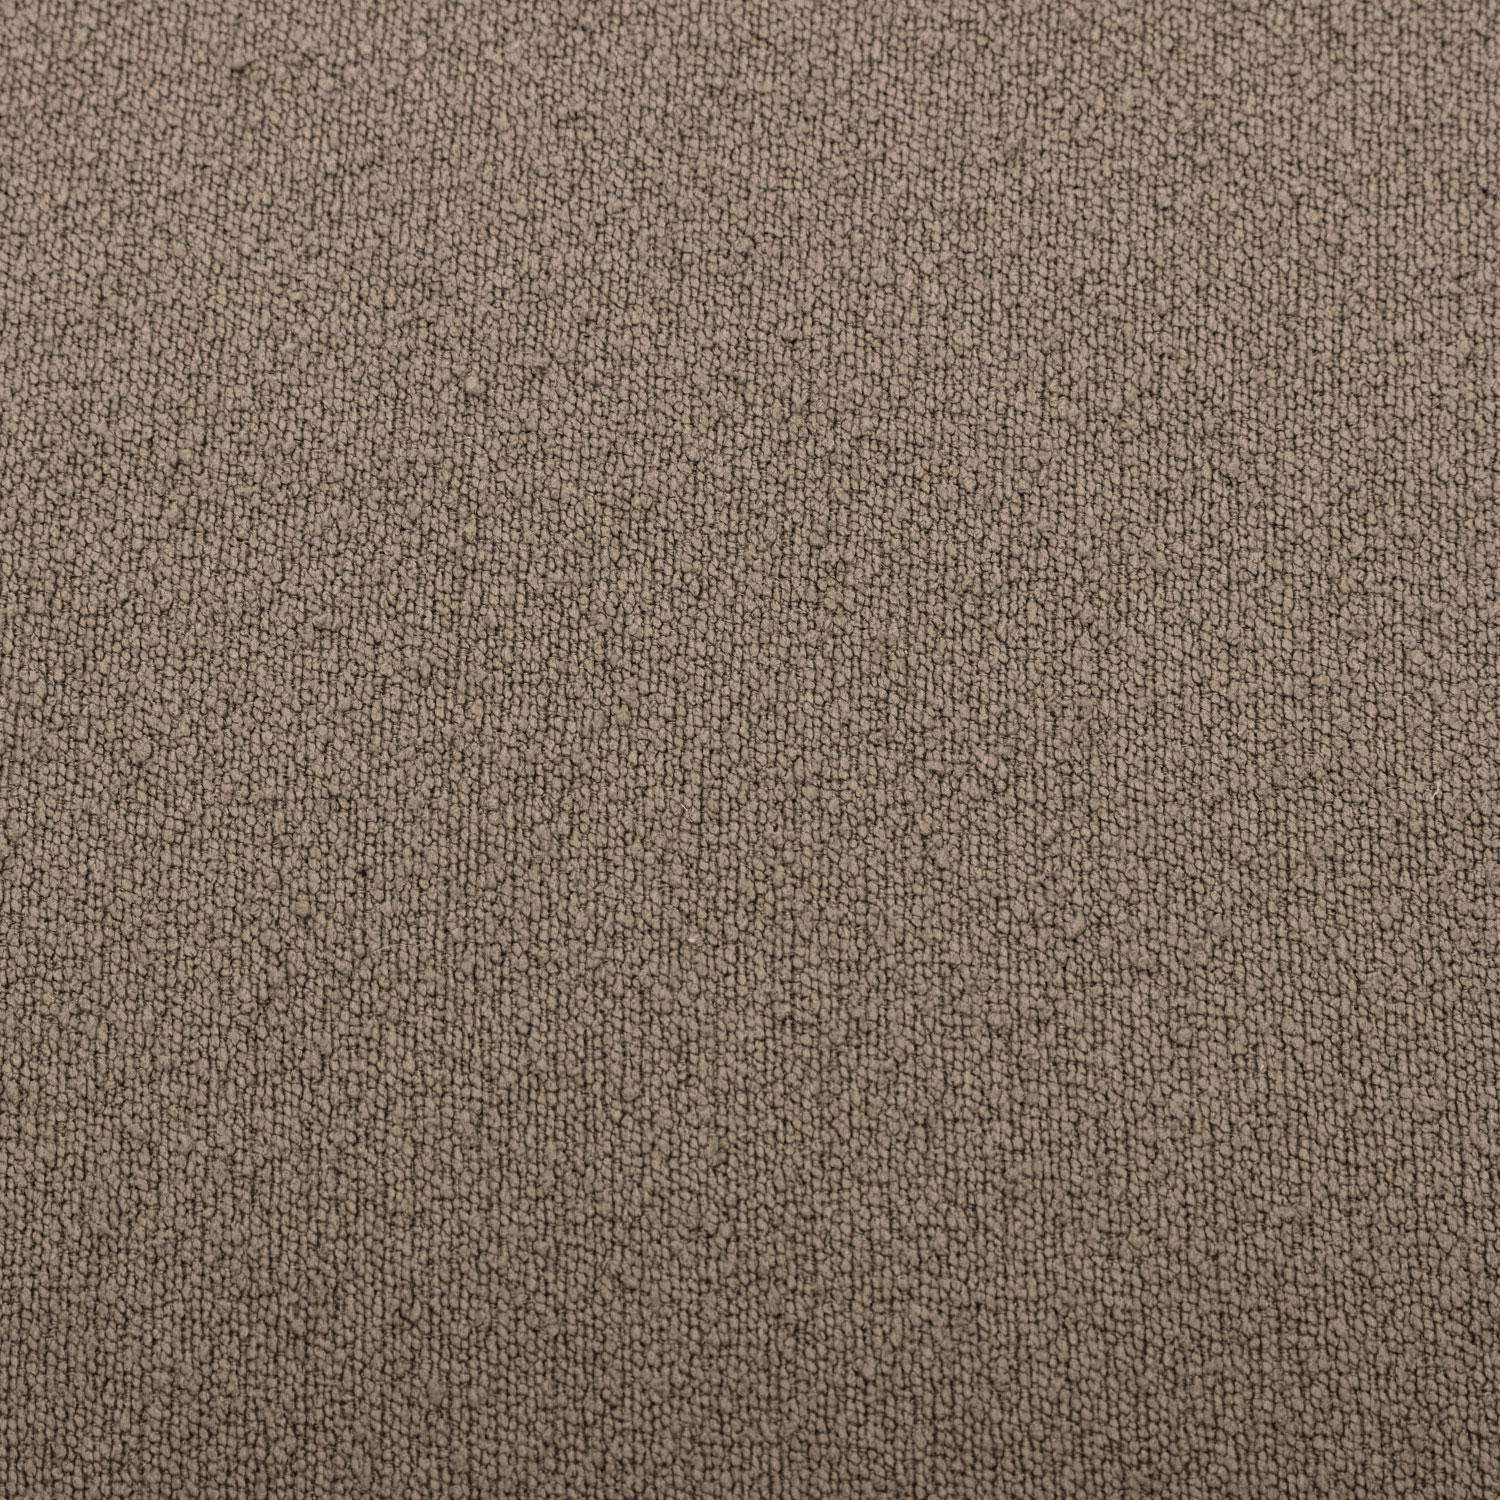 Hocker in Kieselsteinform mit taupefarbenem Stoffbezug, B 60 x T 44 x H 40 cm - Tao,sweeek,Photo7